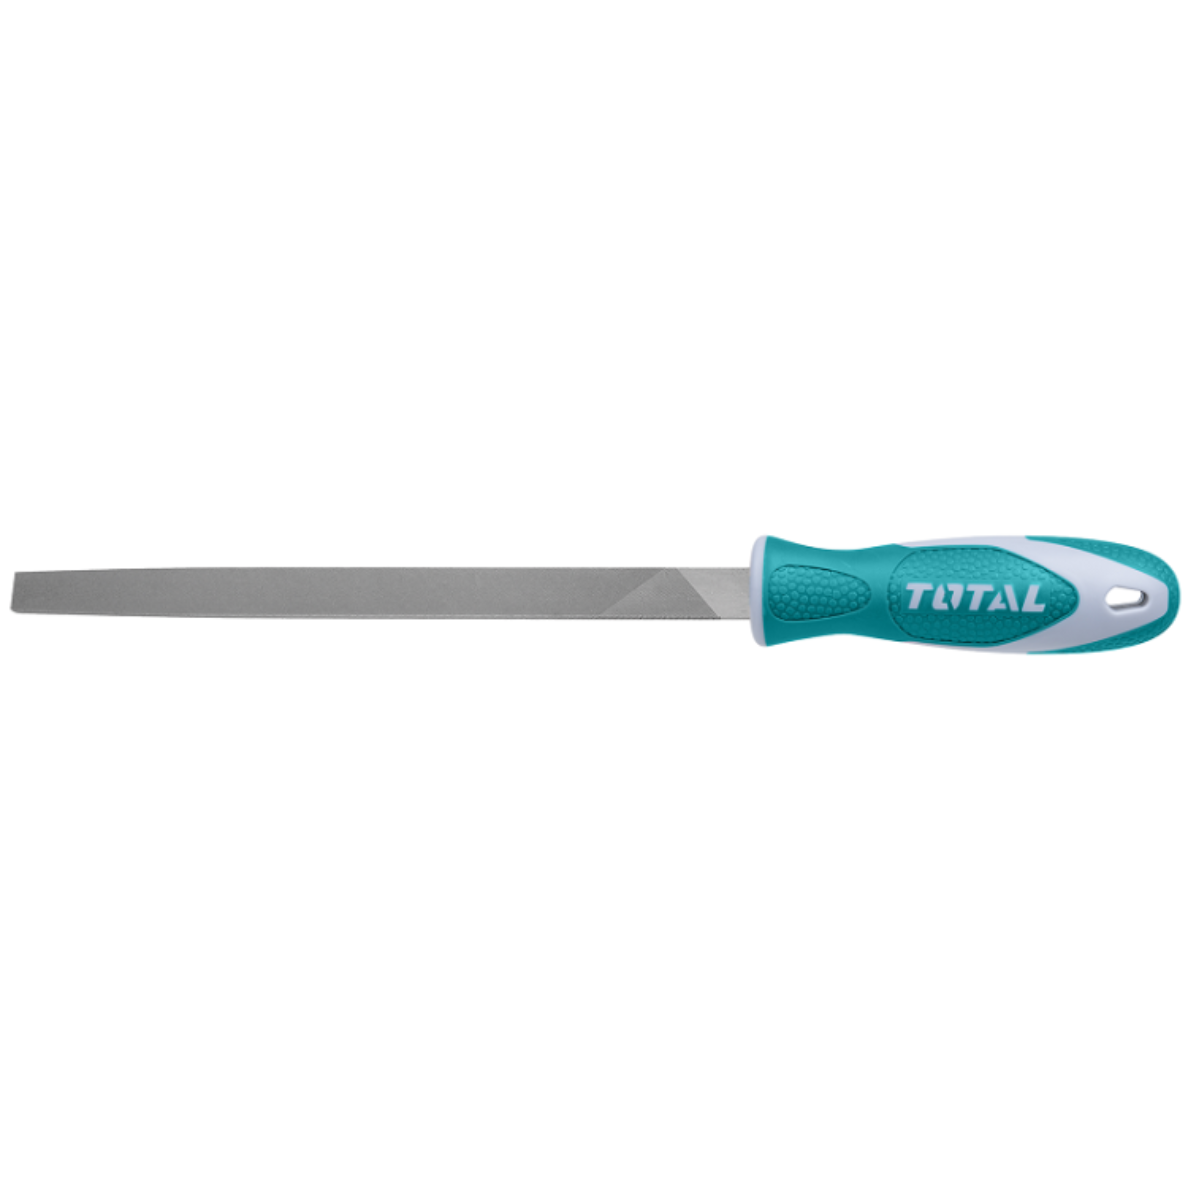 Total - THT91186 - Flat steel file